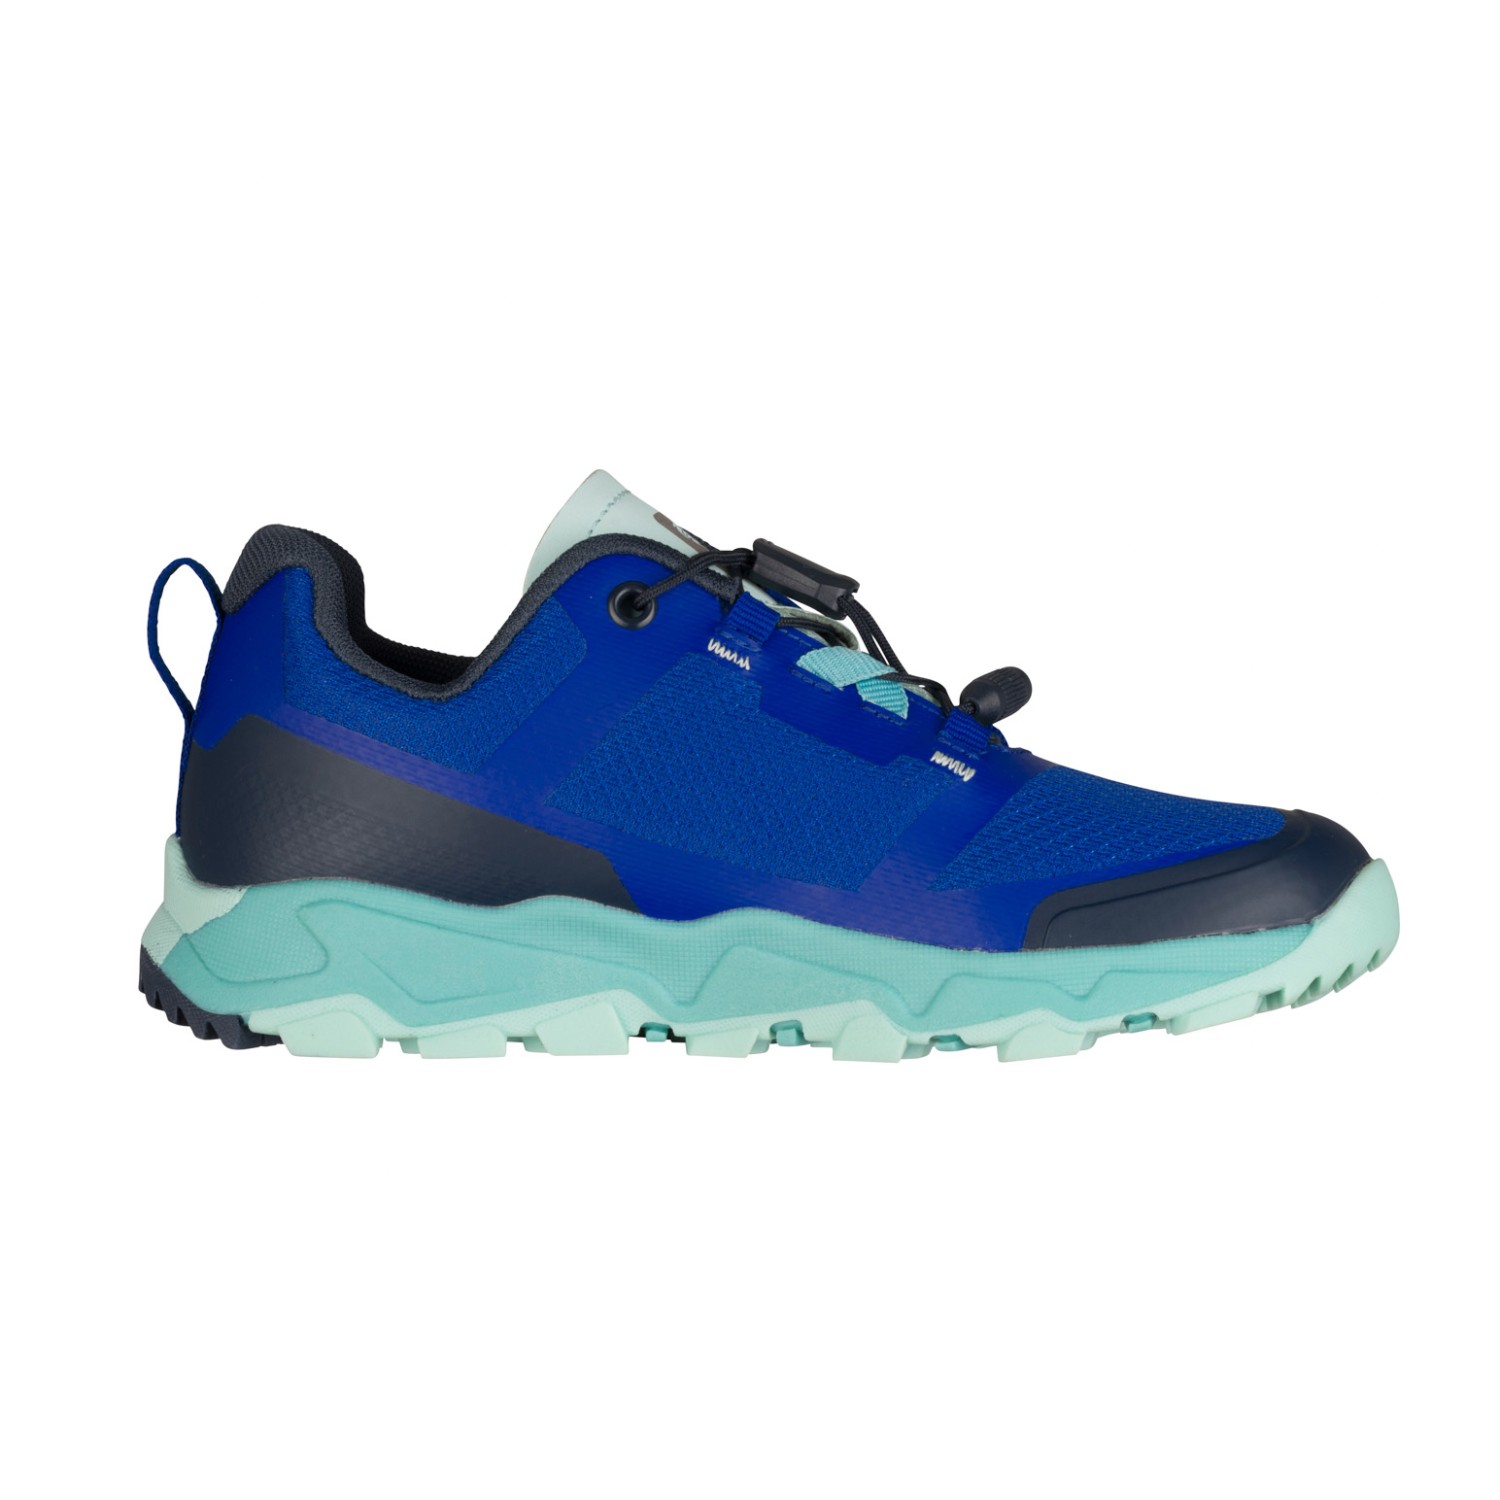 Мультиспортивная обувь Trollkids Kid's Sandefjord Hiker XT, цвет Cobalt Blue/Dark Navy/Dusky Turquoise